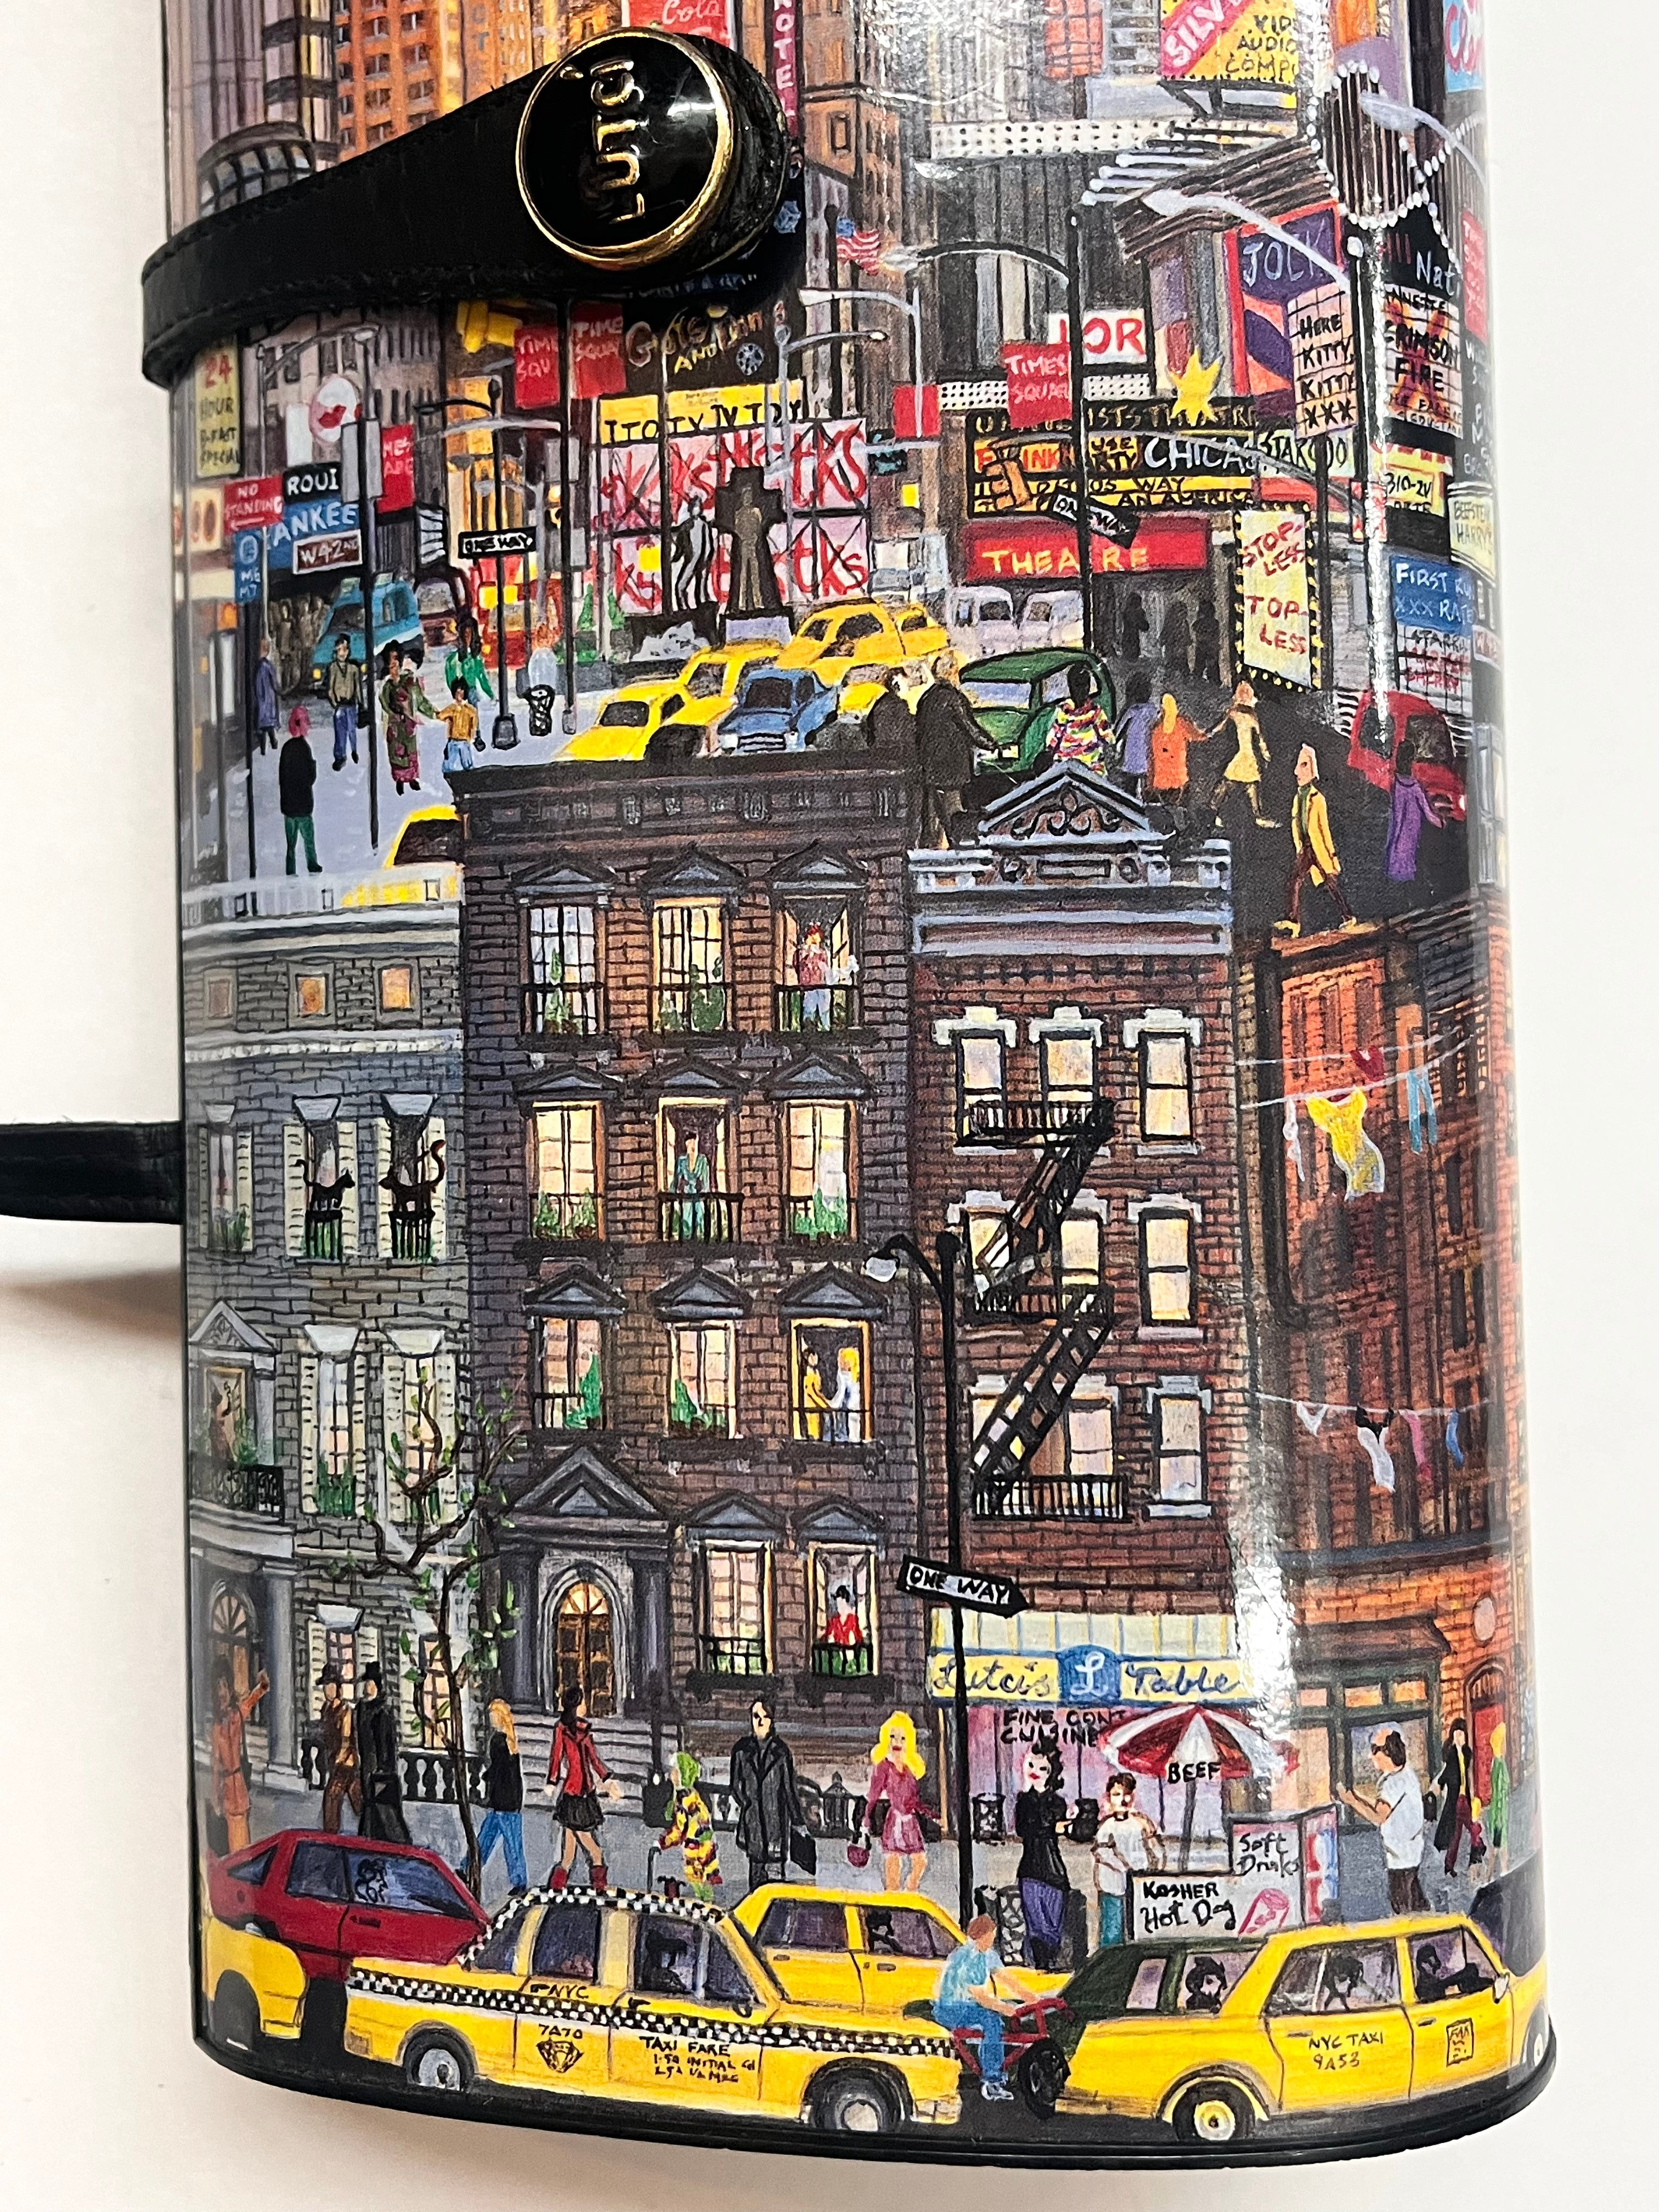 Vintage Lutci NYC Magazine Multicolor Box Handbag